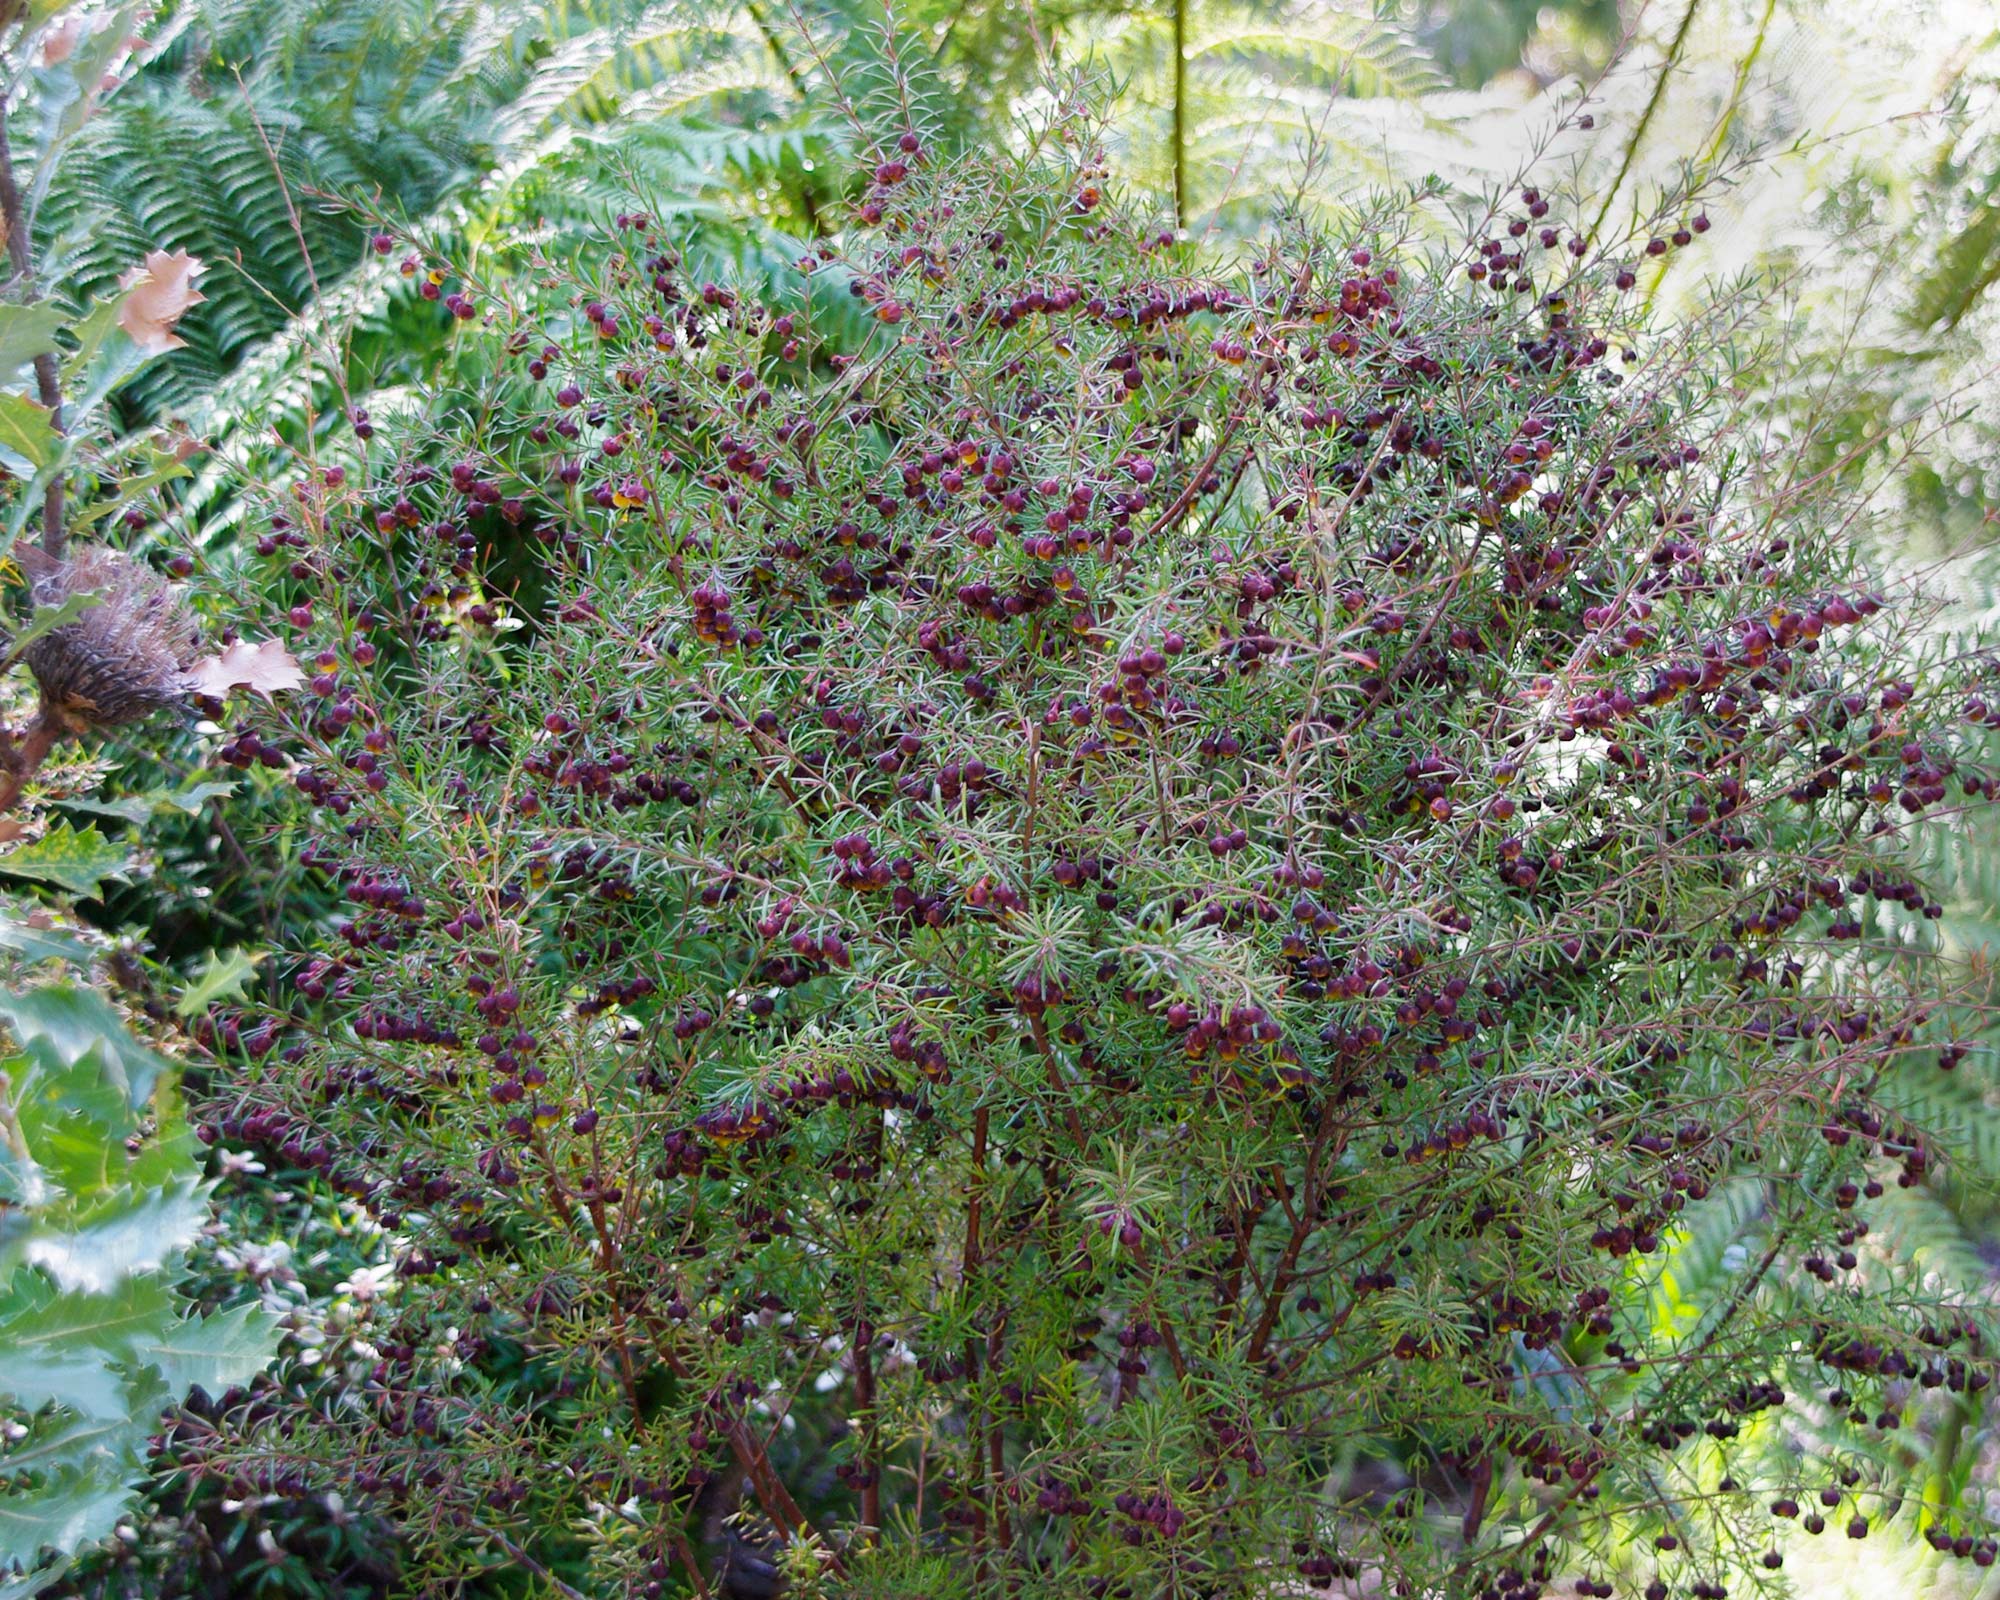 Boronia megastigma commonly known as Brown Boronia